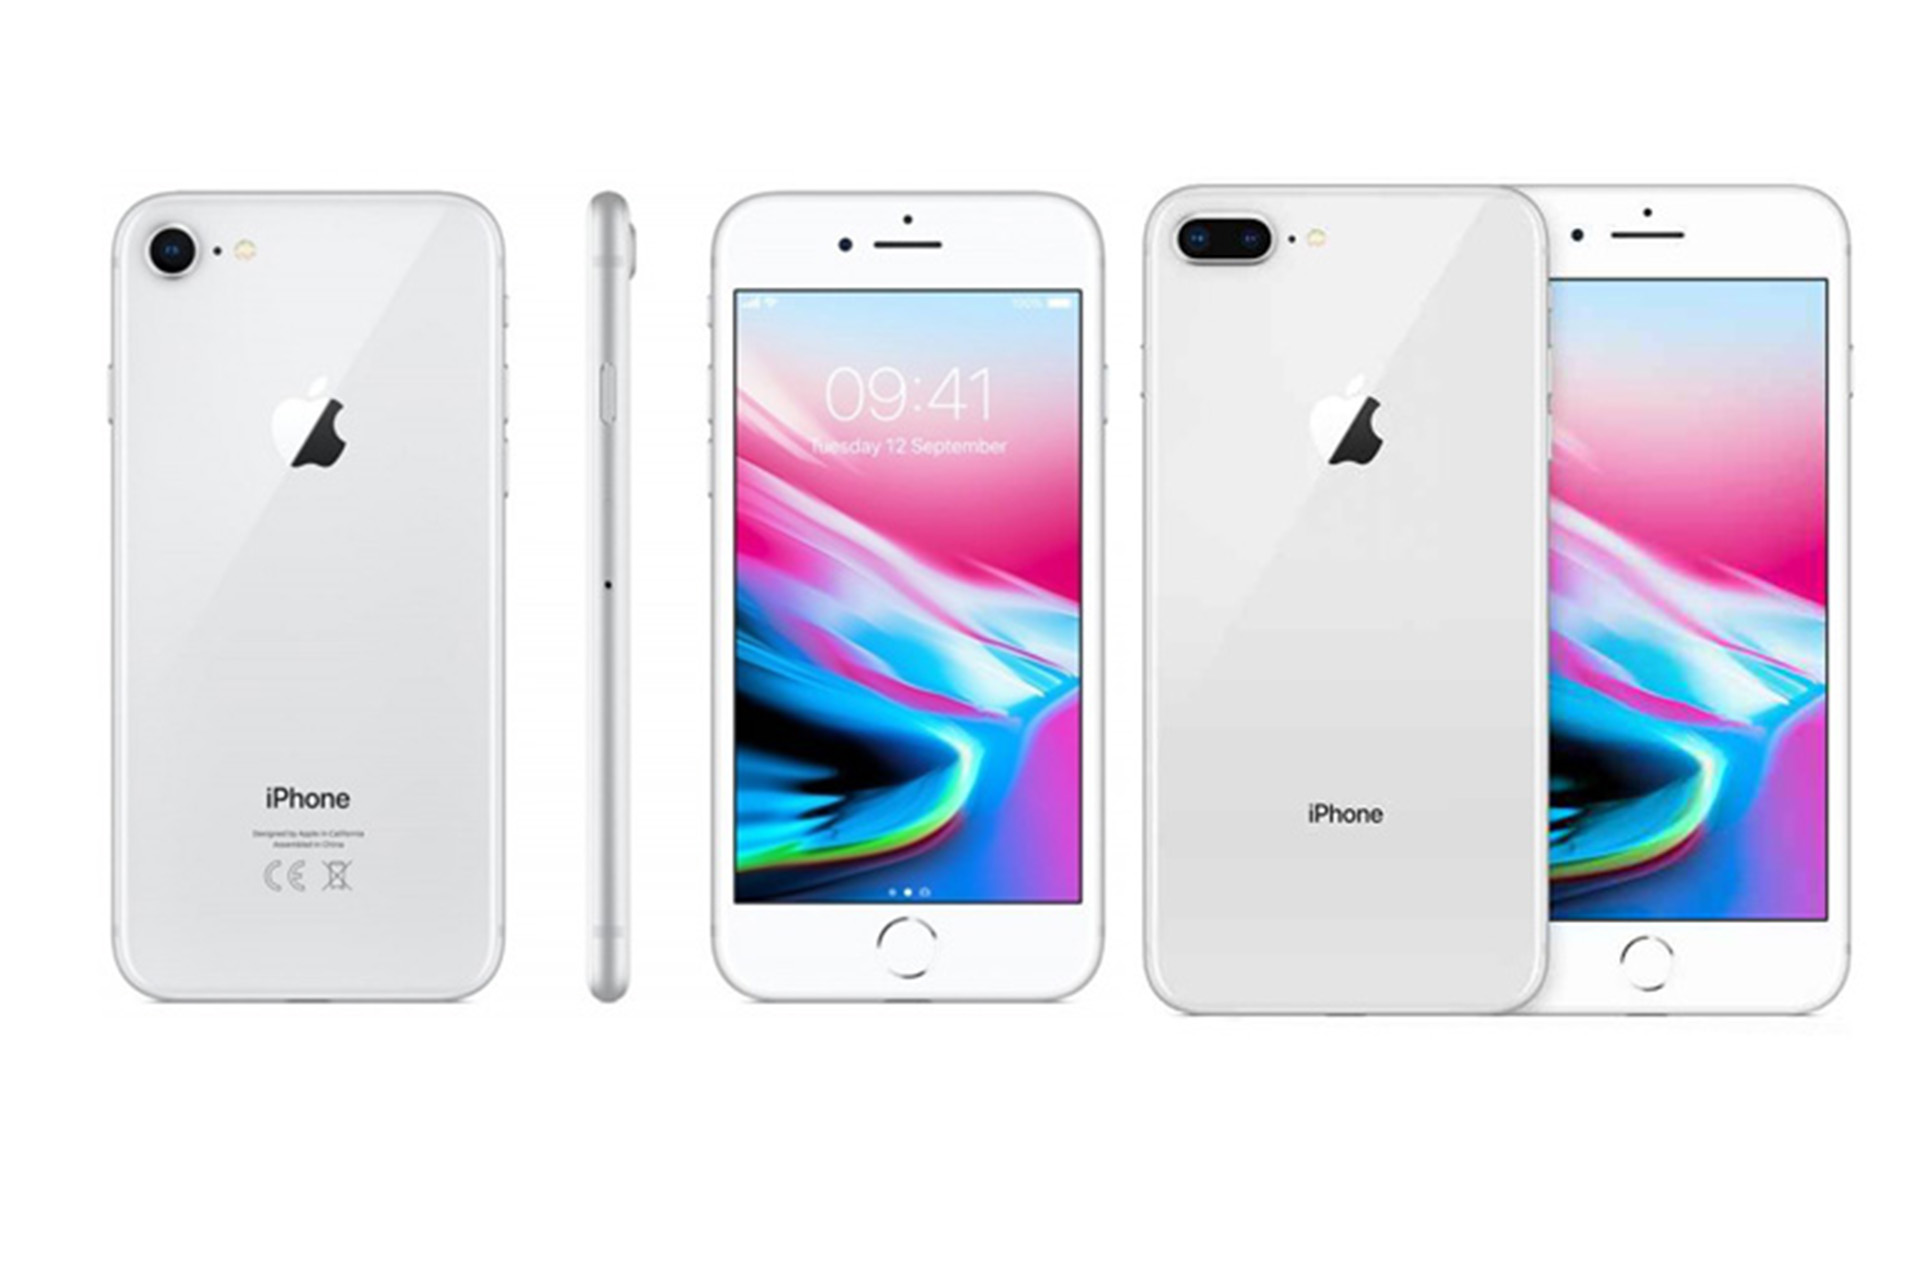 iPhone SE 2020: el celular de Apple tiene la misma batería del iPhone 8